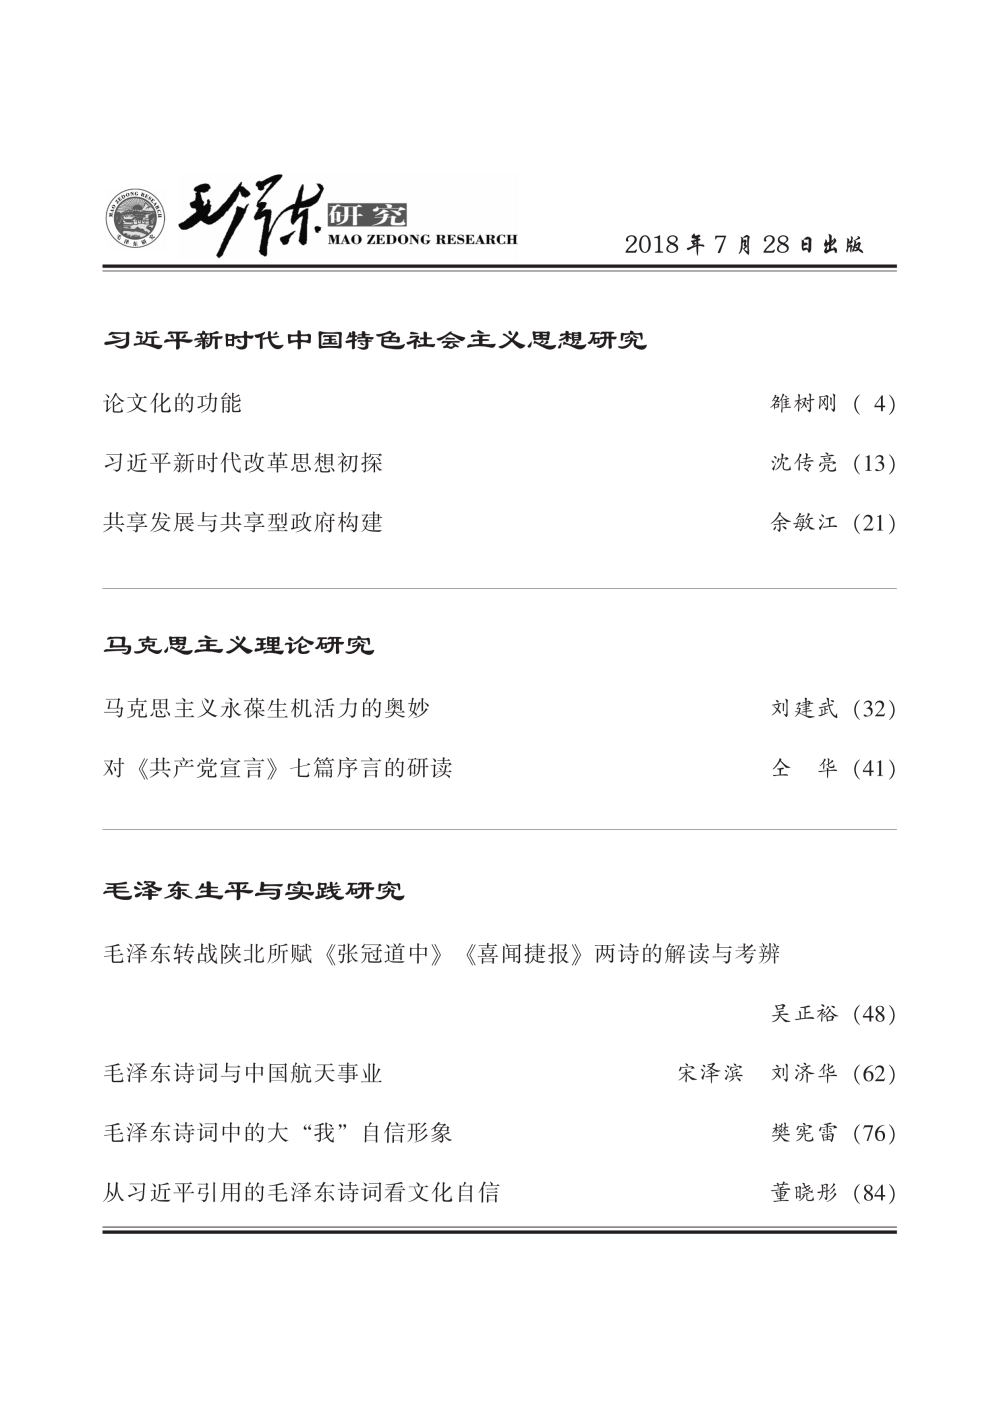 毛泽东研究2018第4期公开出版(图3)